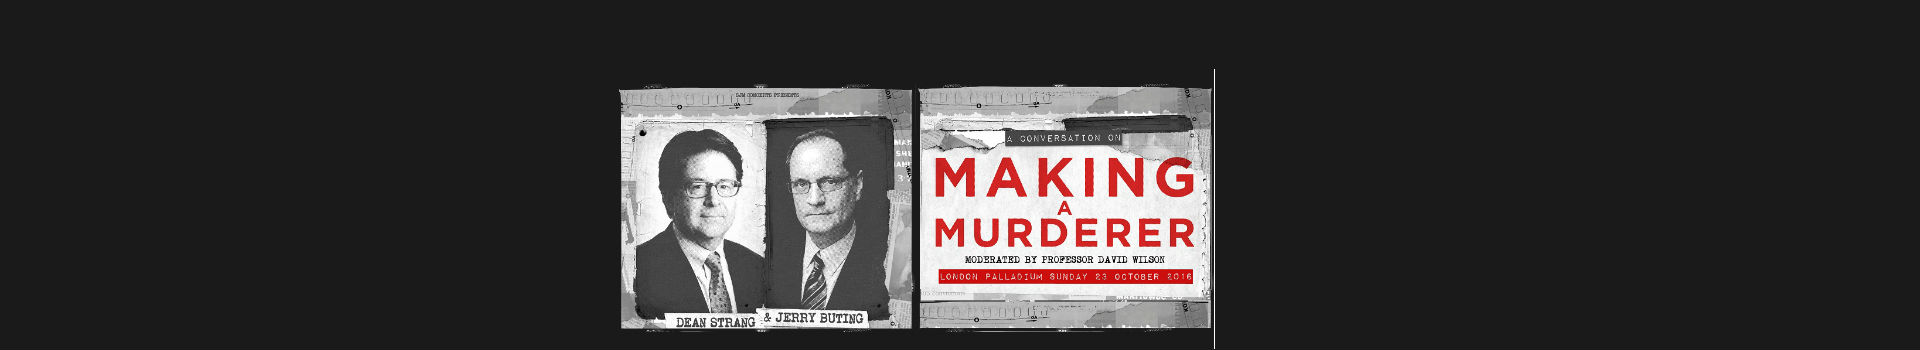 Making a Murderer banner image